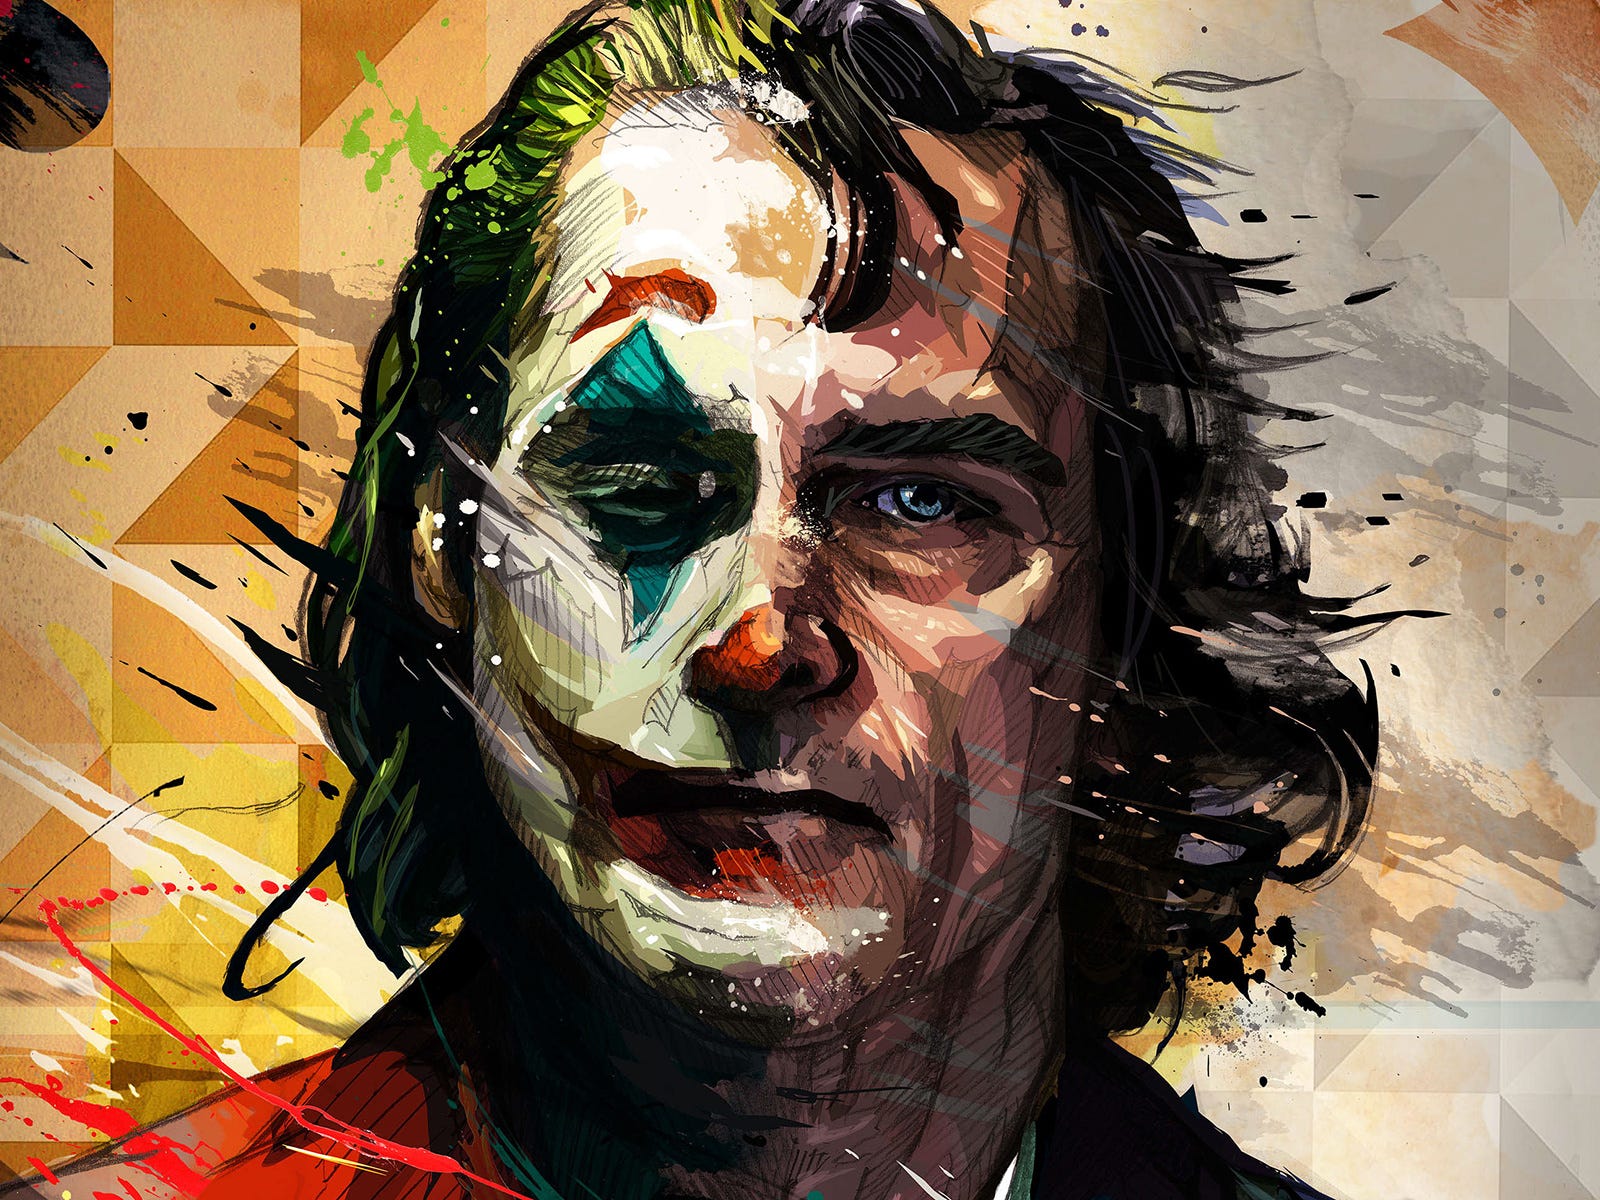 Joker art & design collection - Muzli - Design Inspiration1600 x 1200